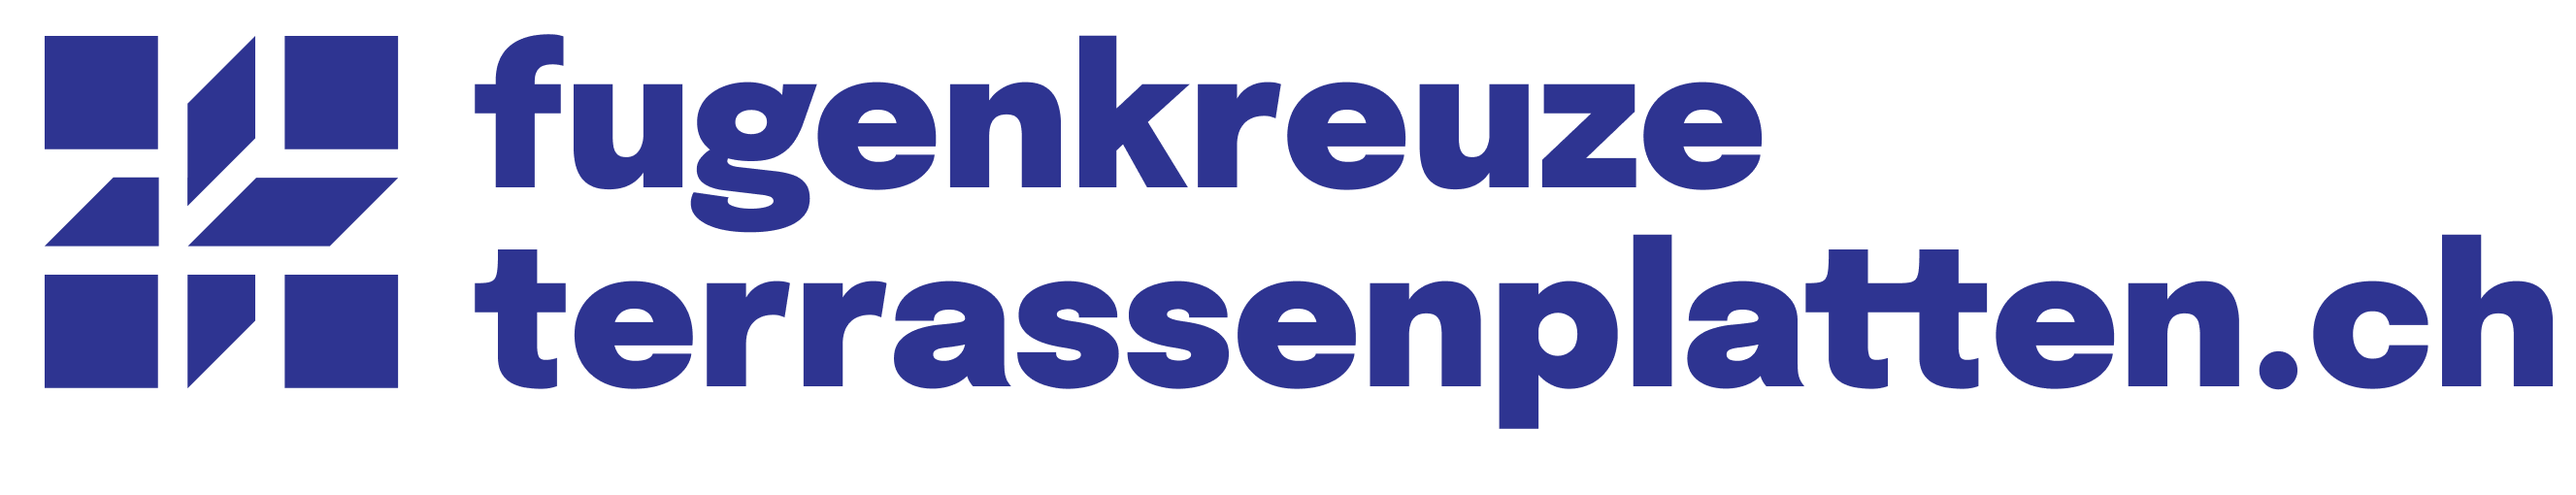 Logo de l'entreprise de croisillon d'écartement pour terrasses extérieures: Croisillon.ch